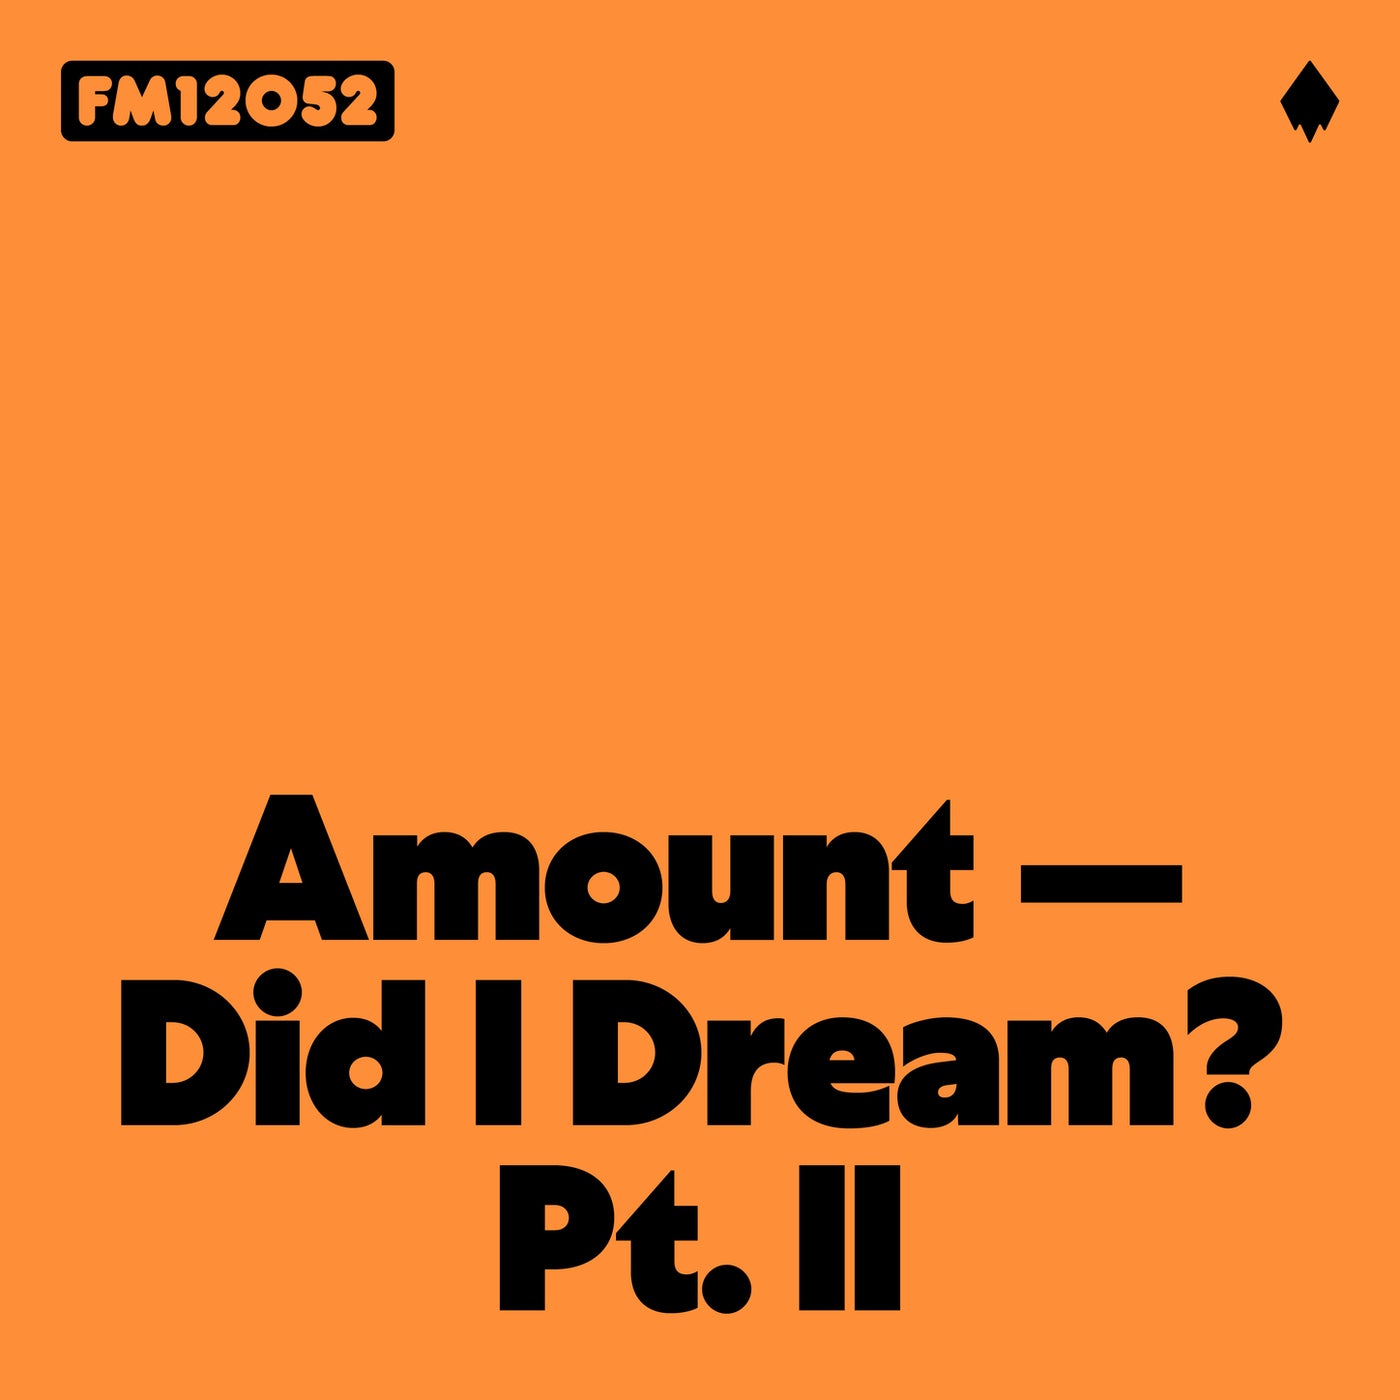 Did I Dream? Pt. II